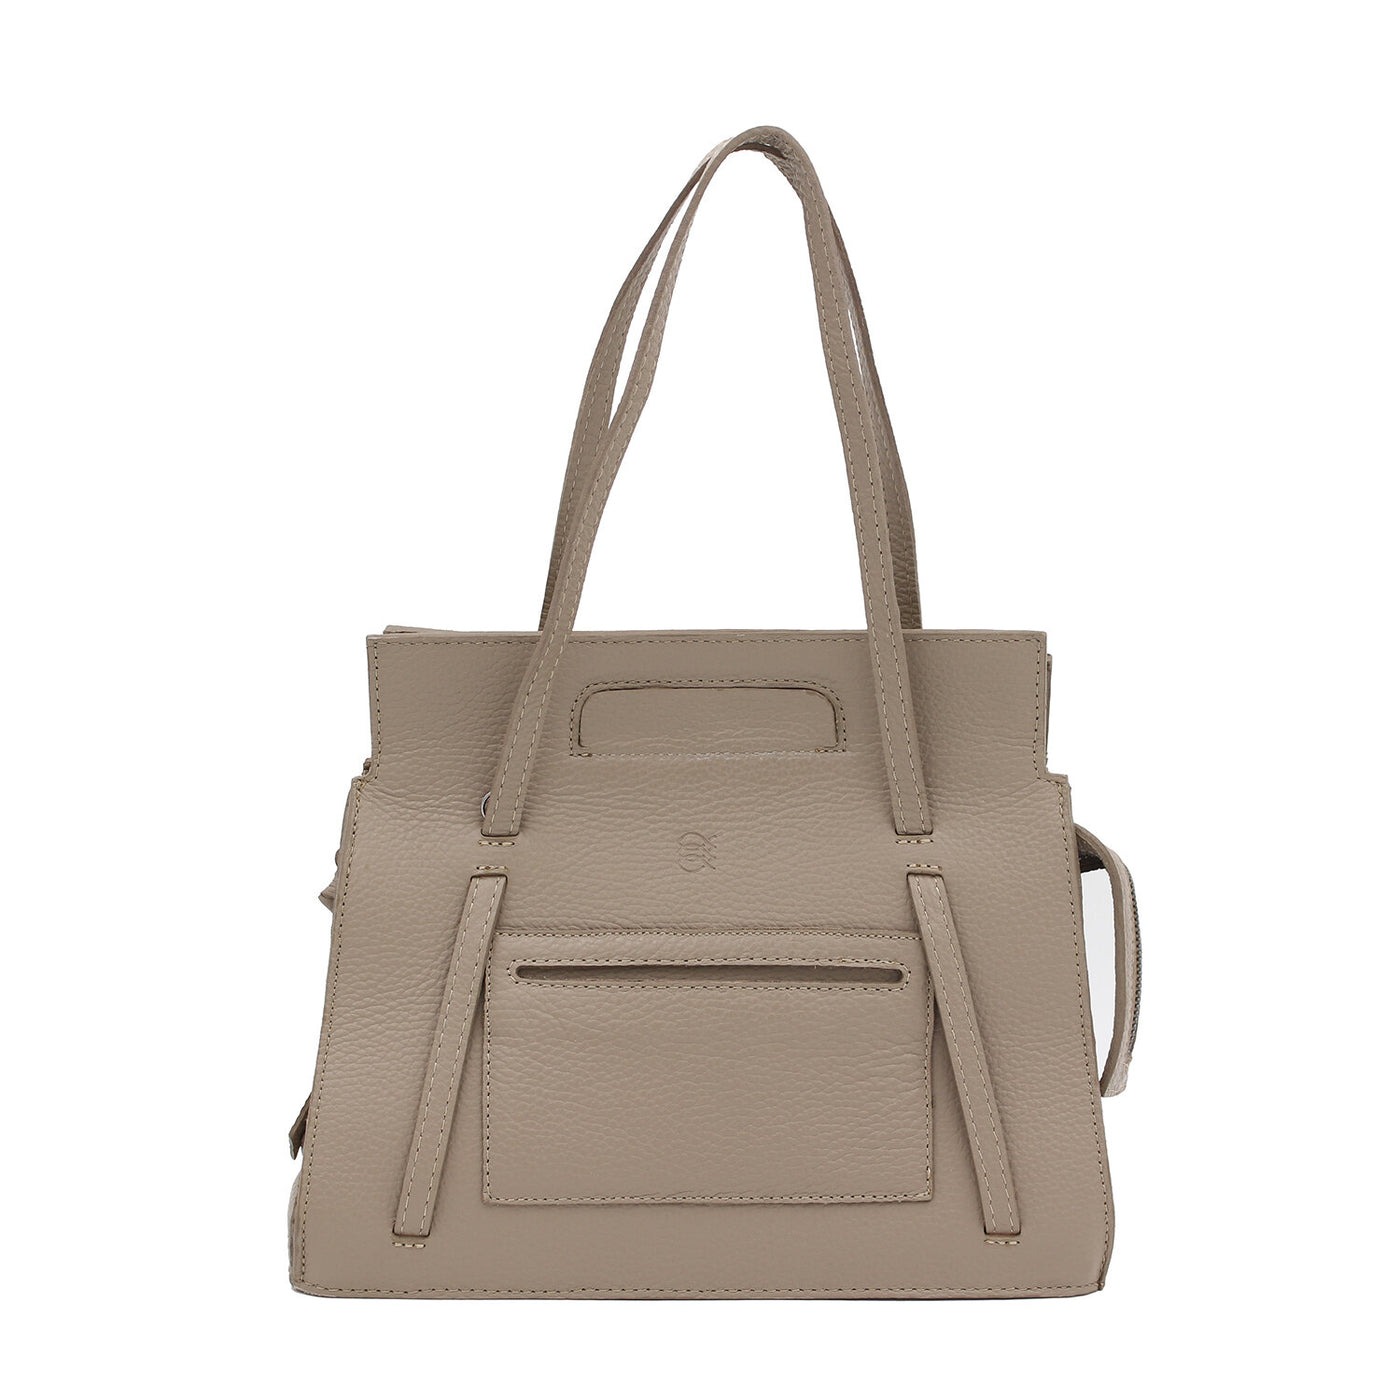 taupe leather micro phantom luggage bag #color_taupe